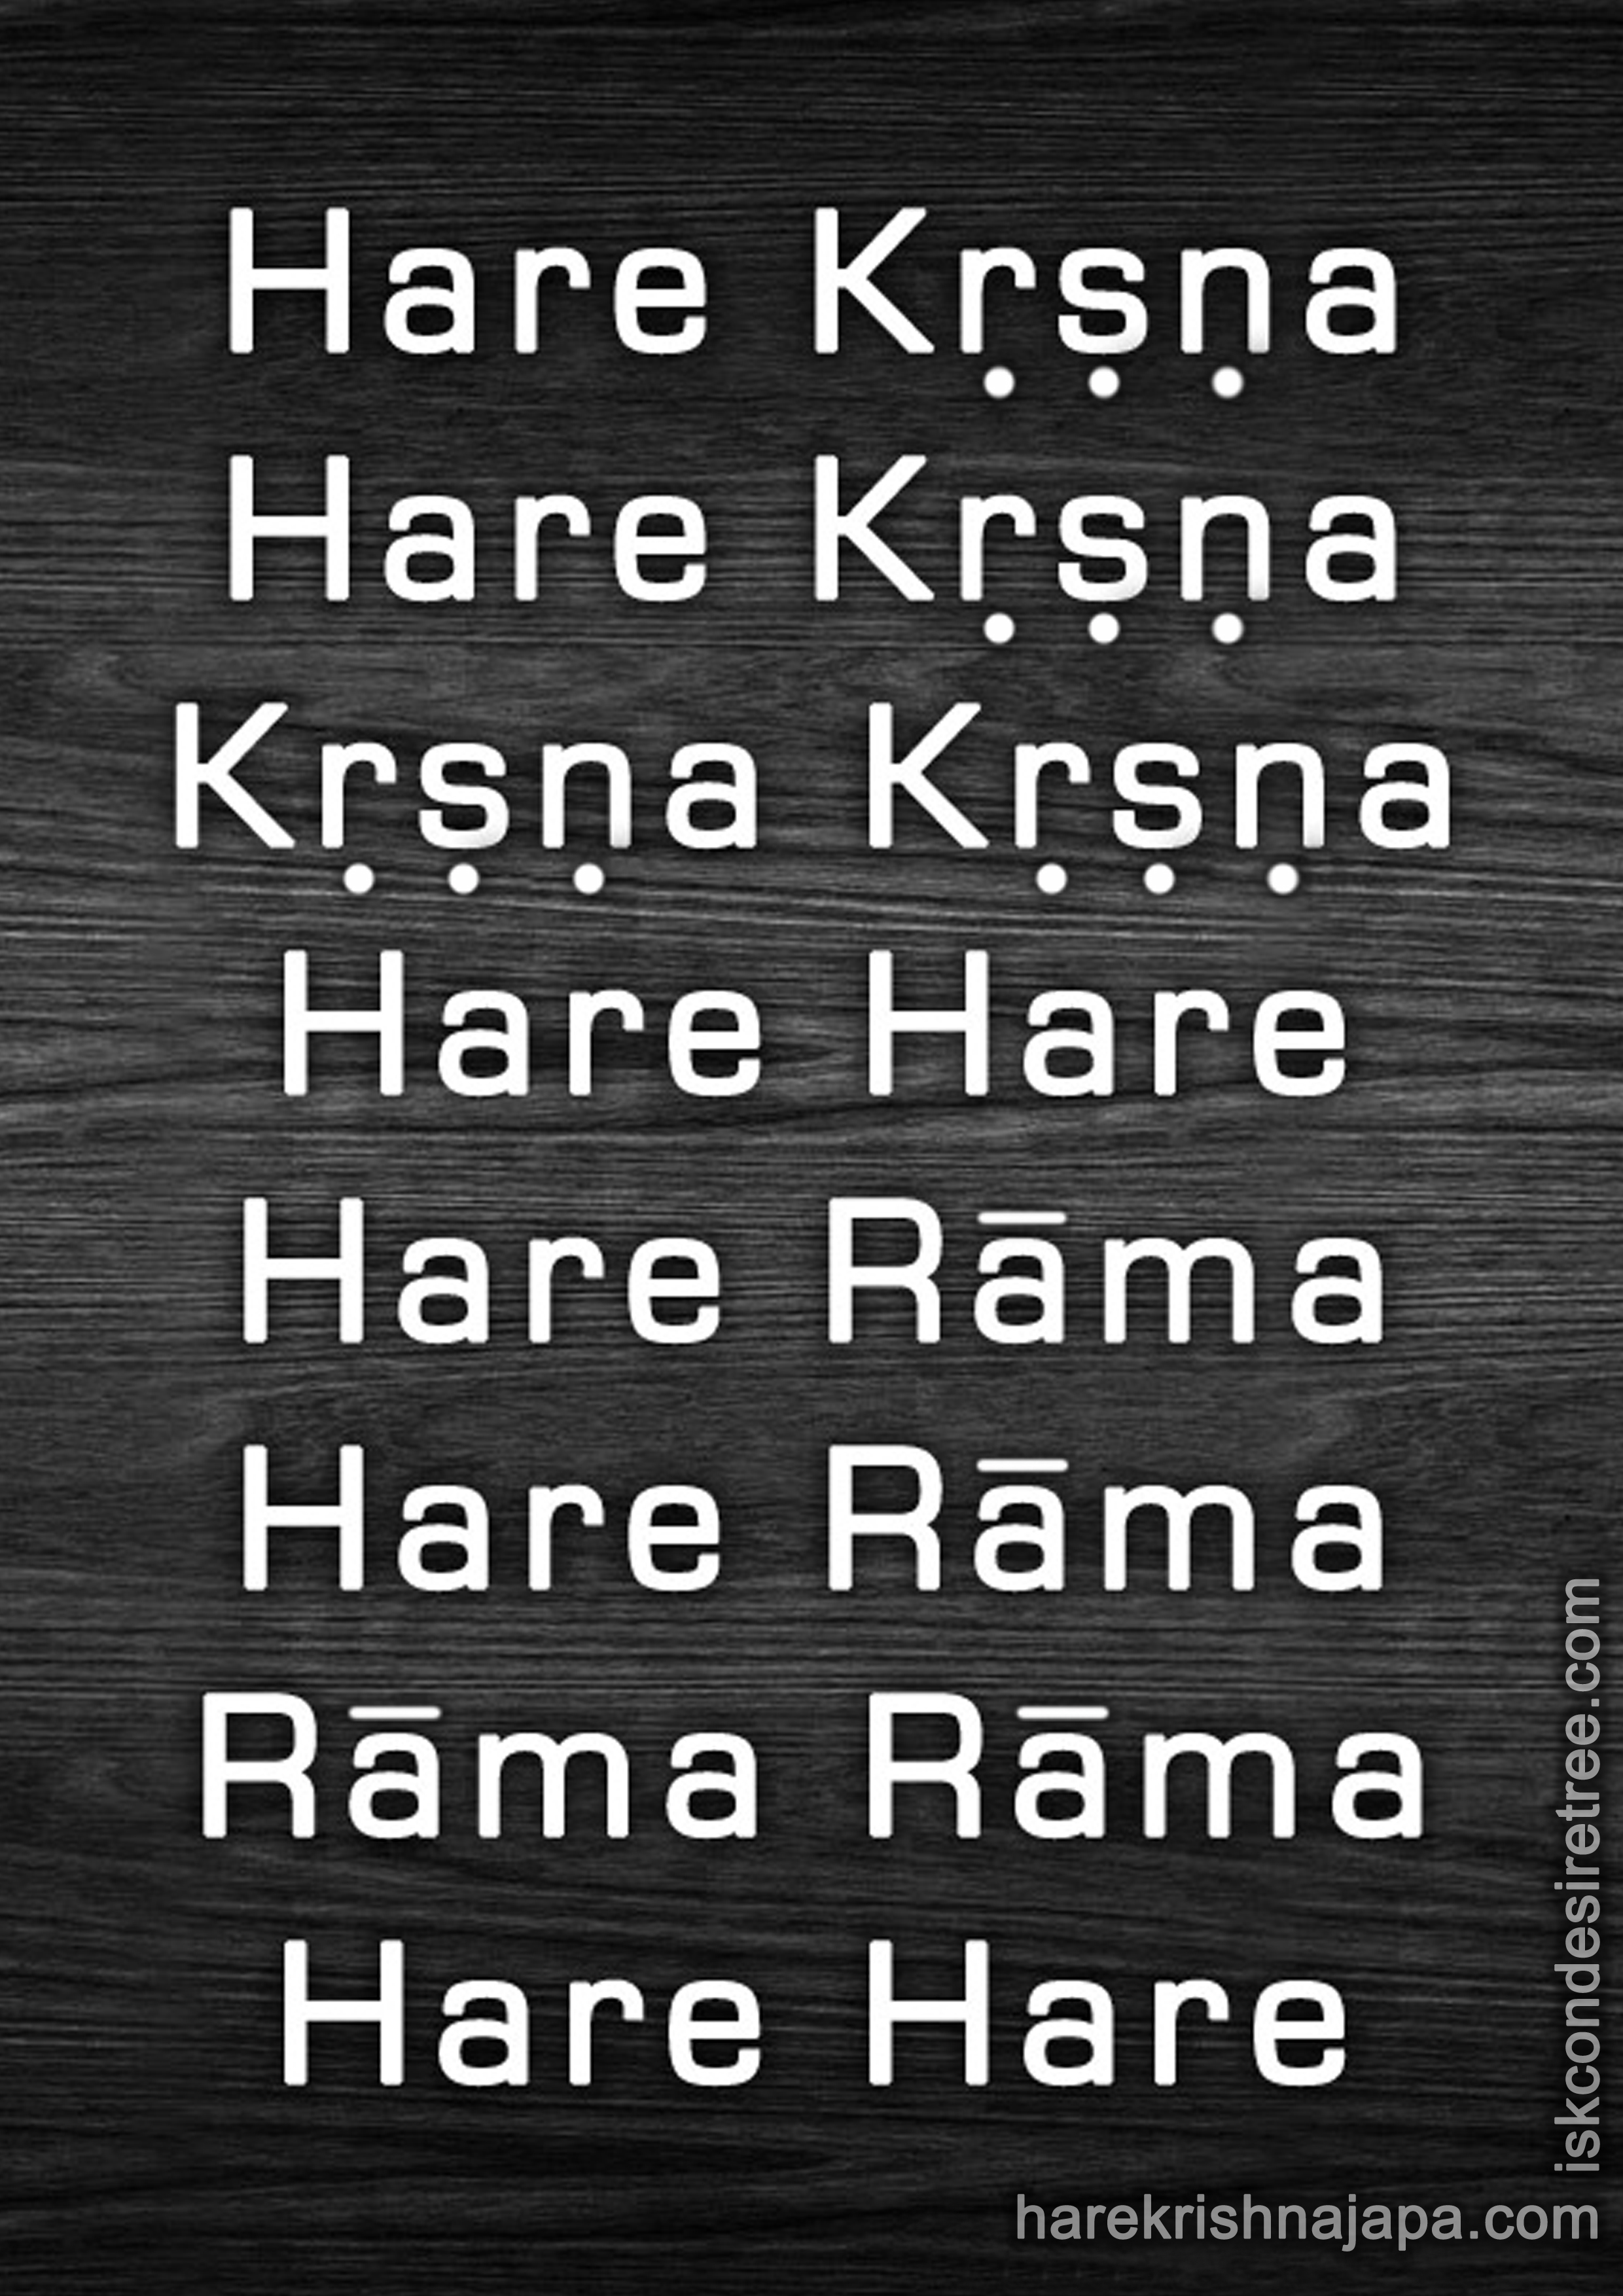 The Hare Krishna Maha Mantra